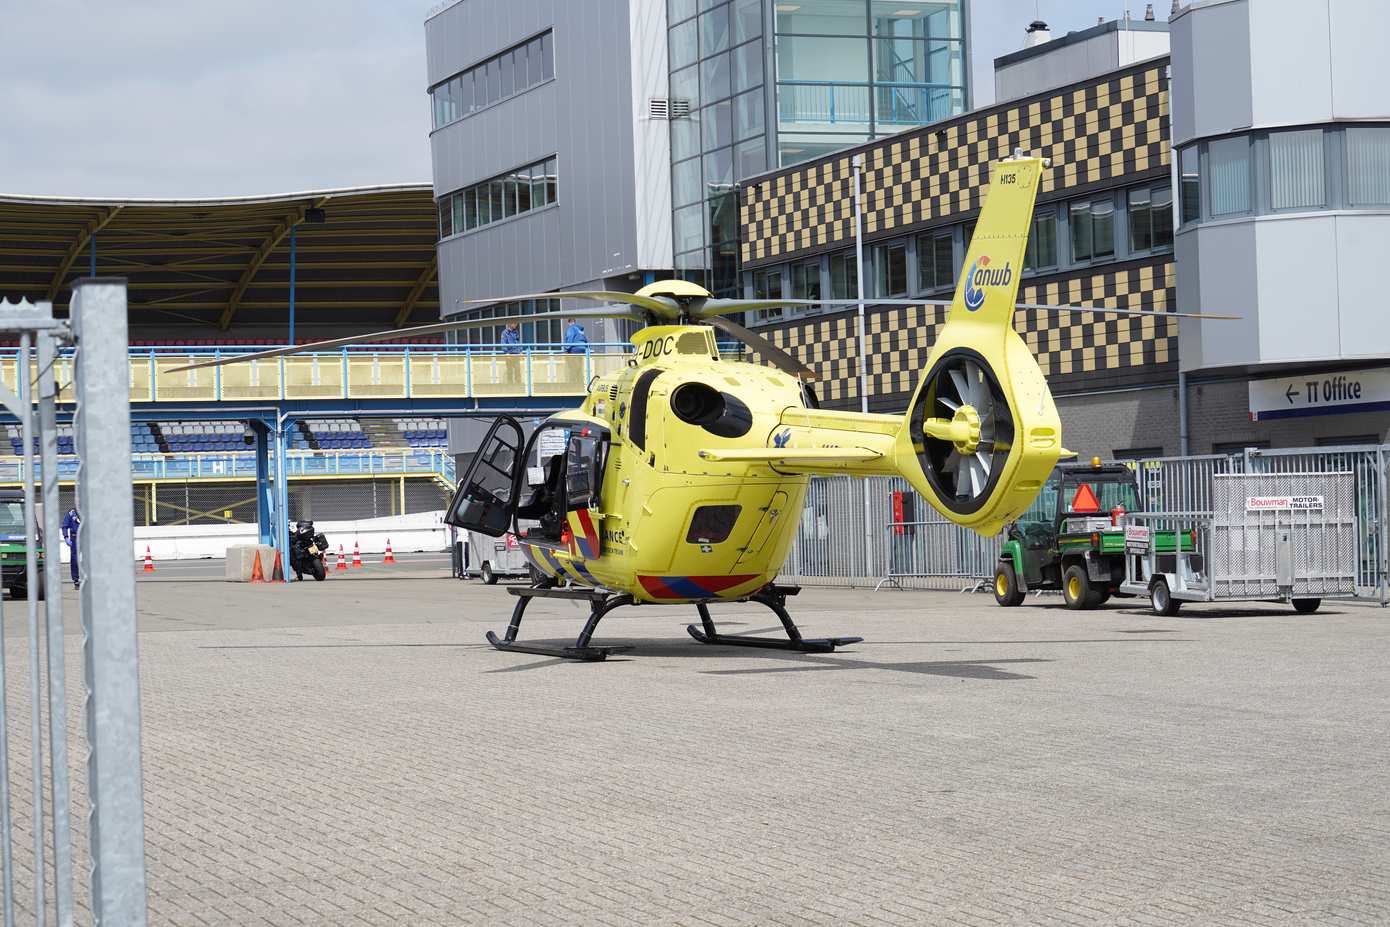 Traumahelikopter ingezet bij ongeval met motorrijder op TT Circuit